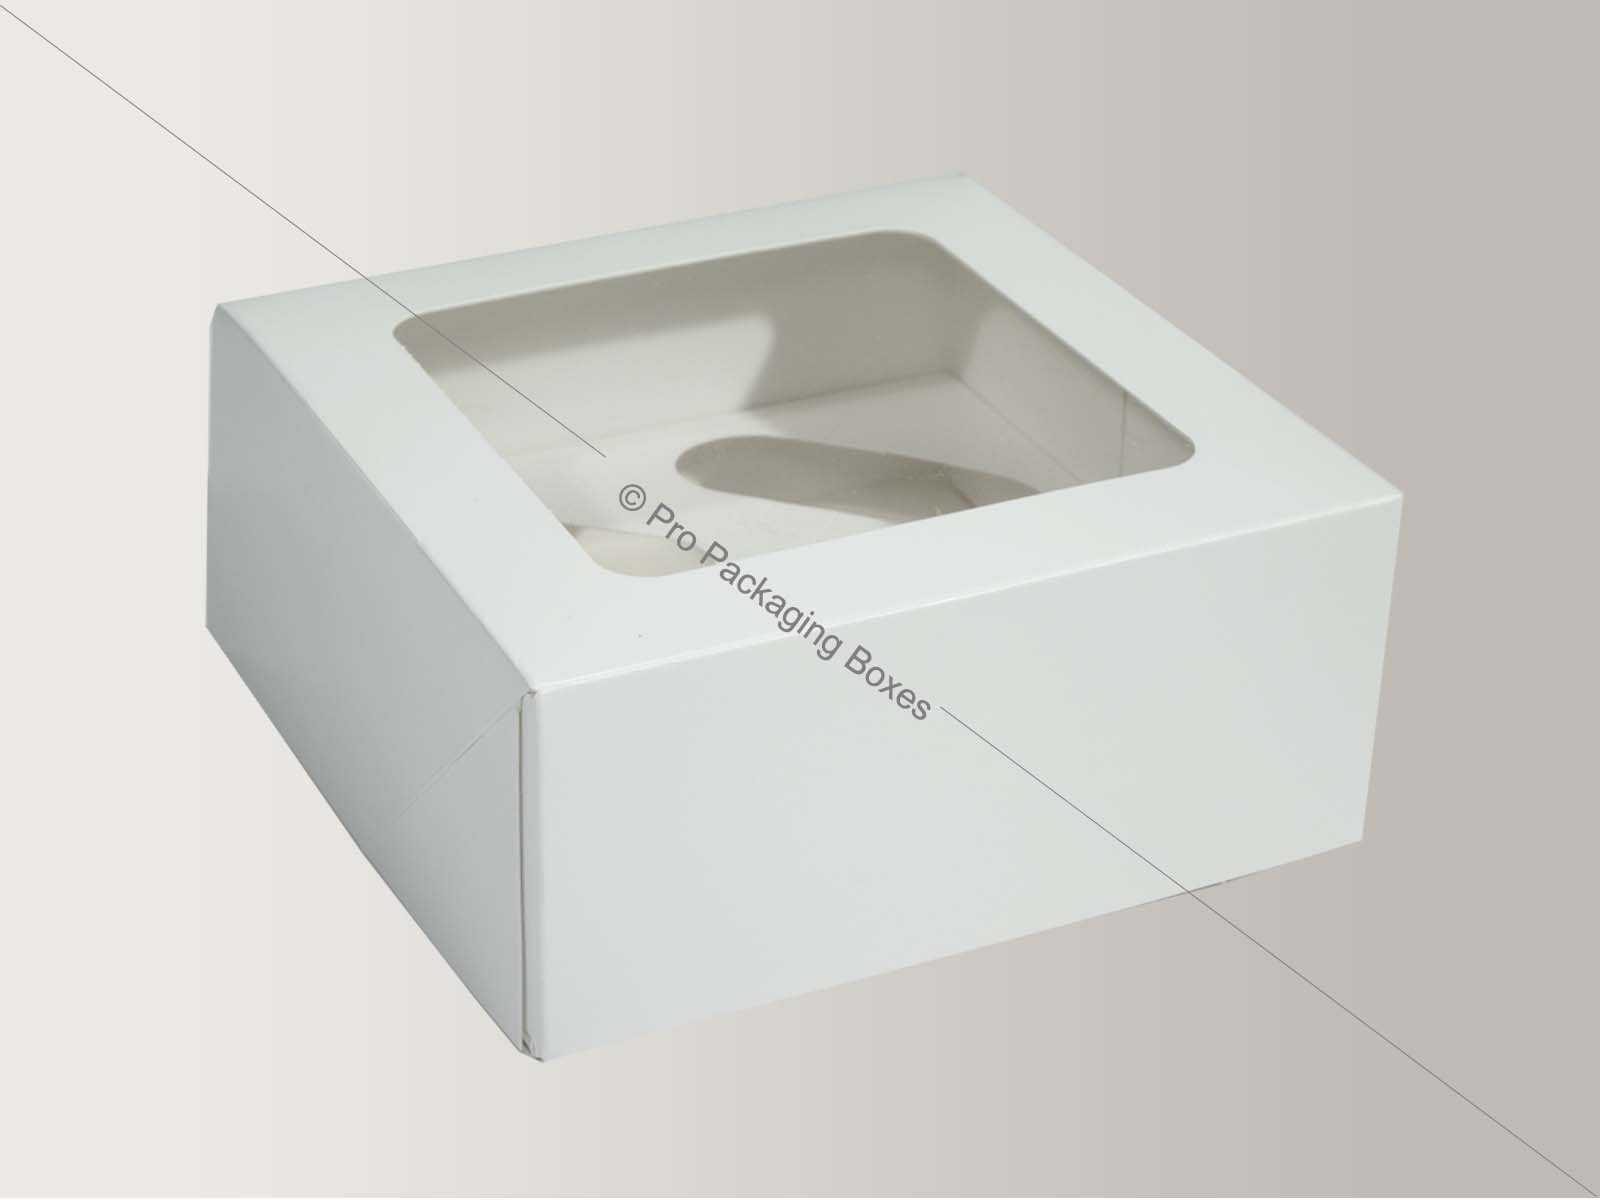 Custom printed cardboard packaging boxes